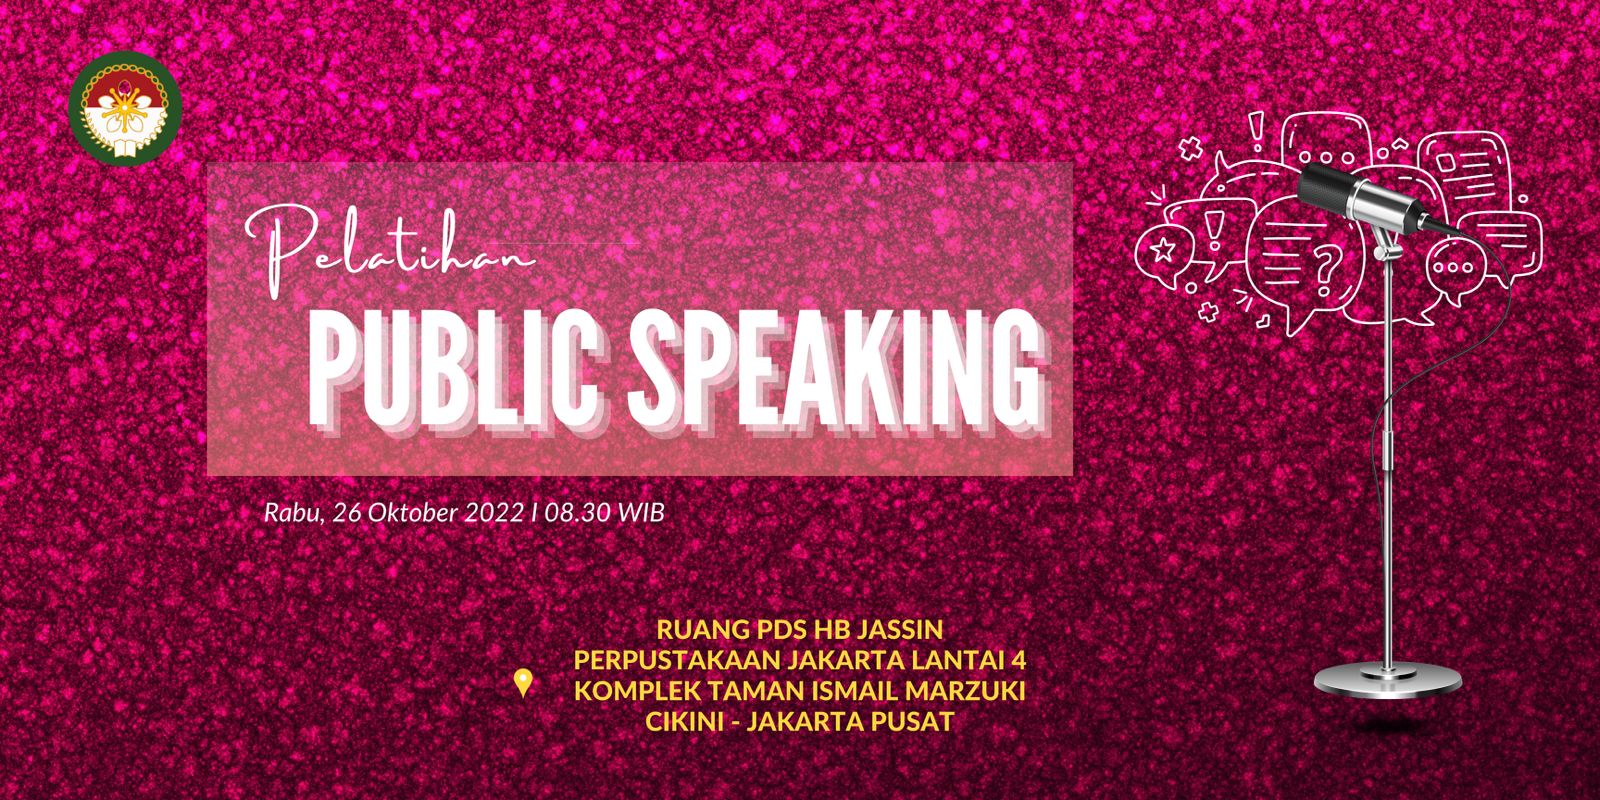 Pelatihan Public Speaking